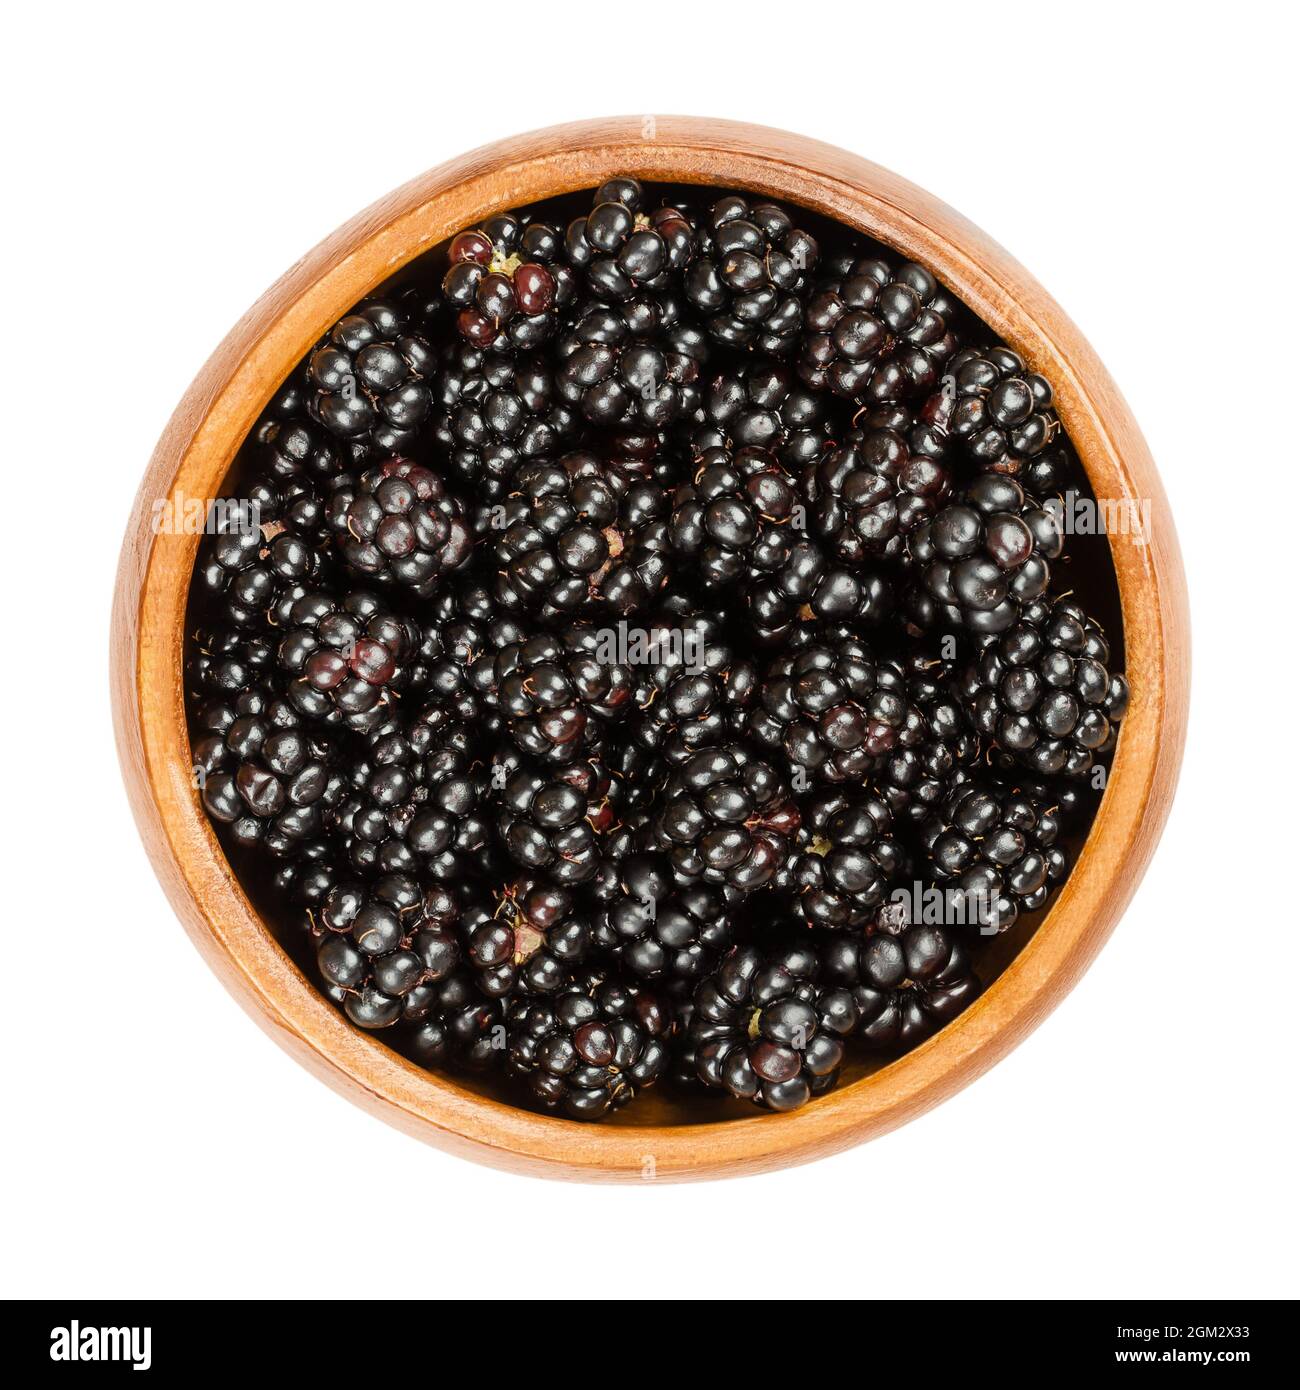 Europäische Brombeeren in einer Holzschale. Frische und reife Wildbrambles, Rubus fruticosus, eine süße Frucht, die für Desserts und Marmeladen verwendet wird. Stockfoto